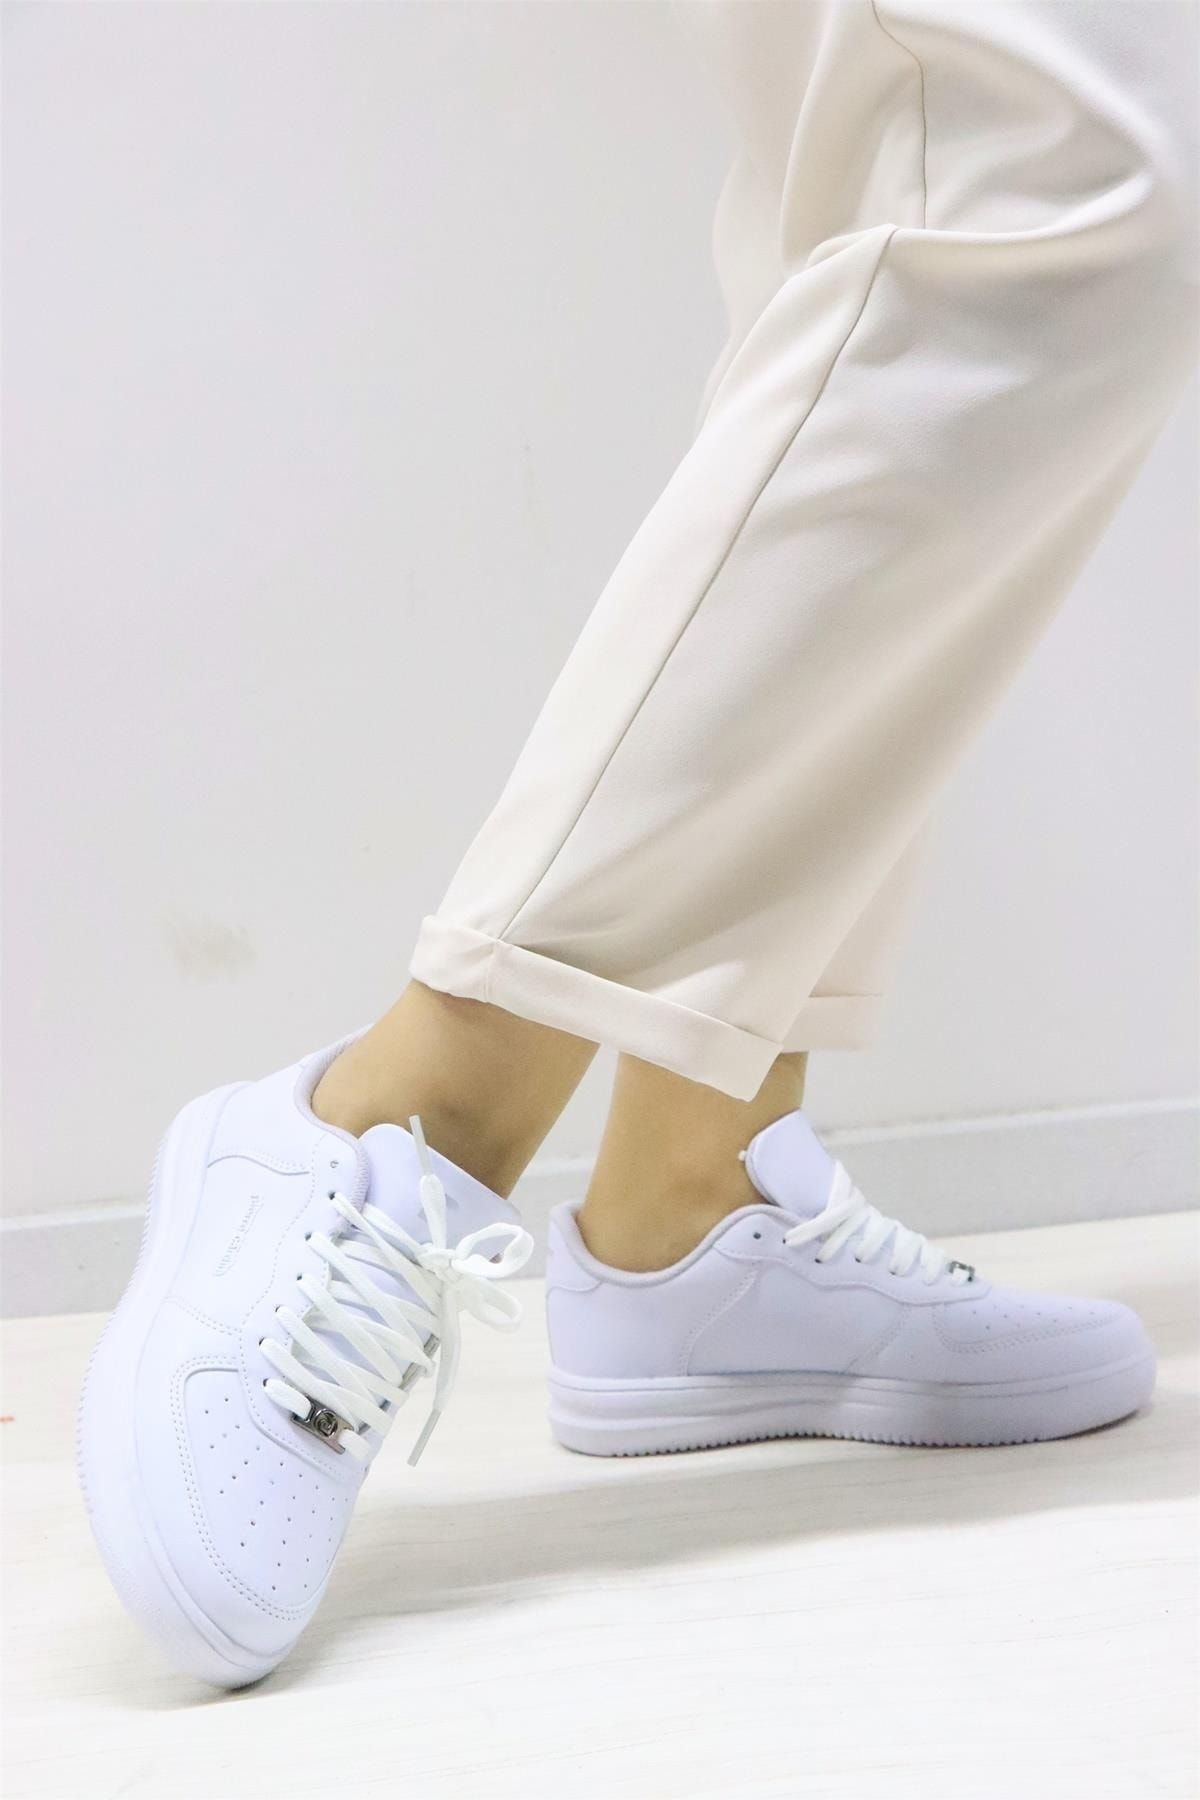 Pierre Cardin 10148 Kadın Beyaz Günlük Ayakkabı